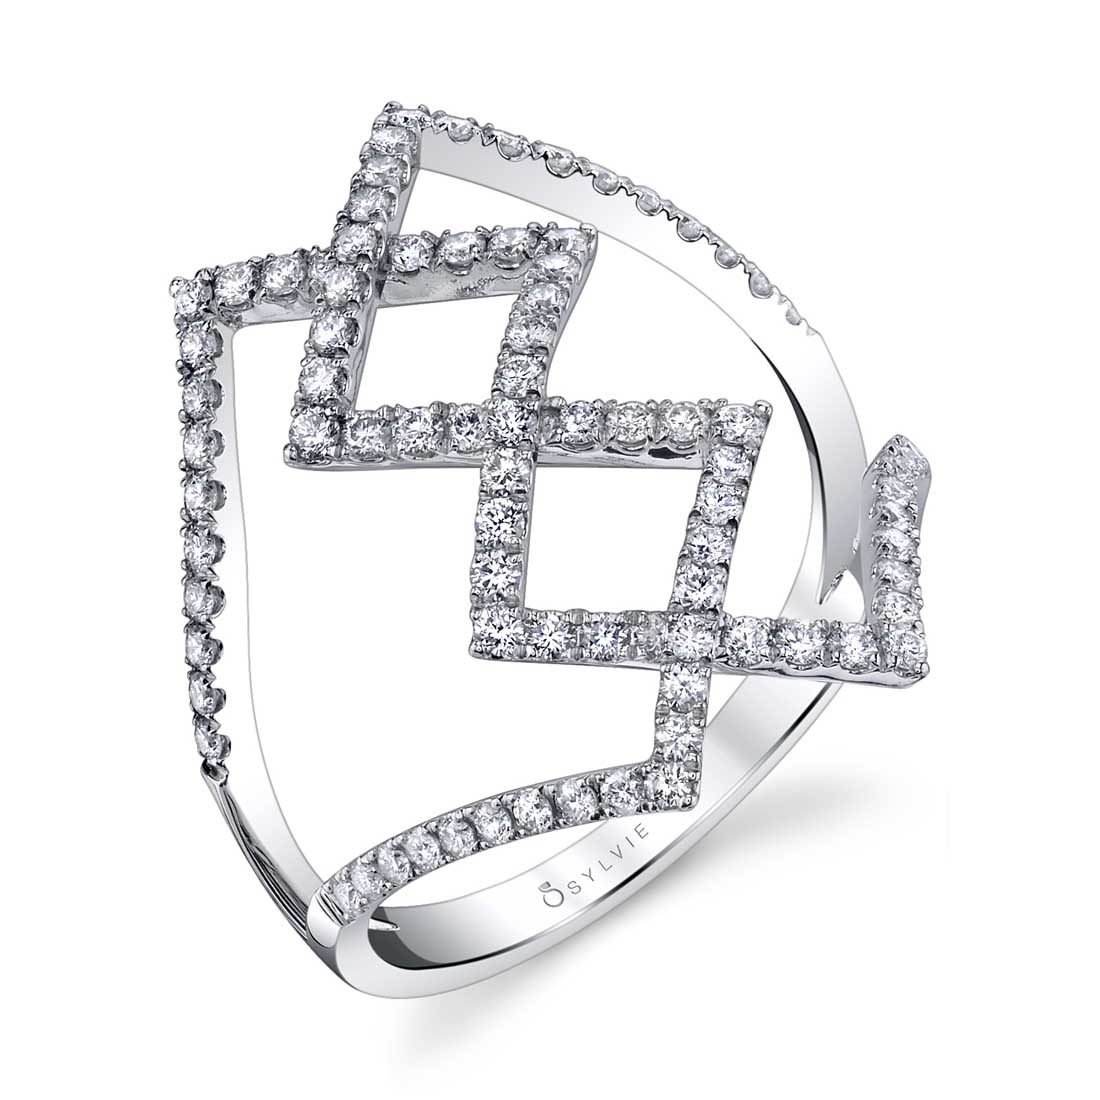 Unique Diamond Fashion Ring